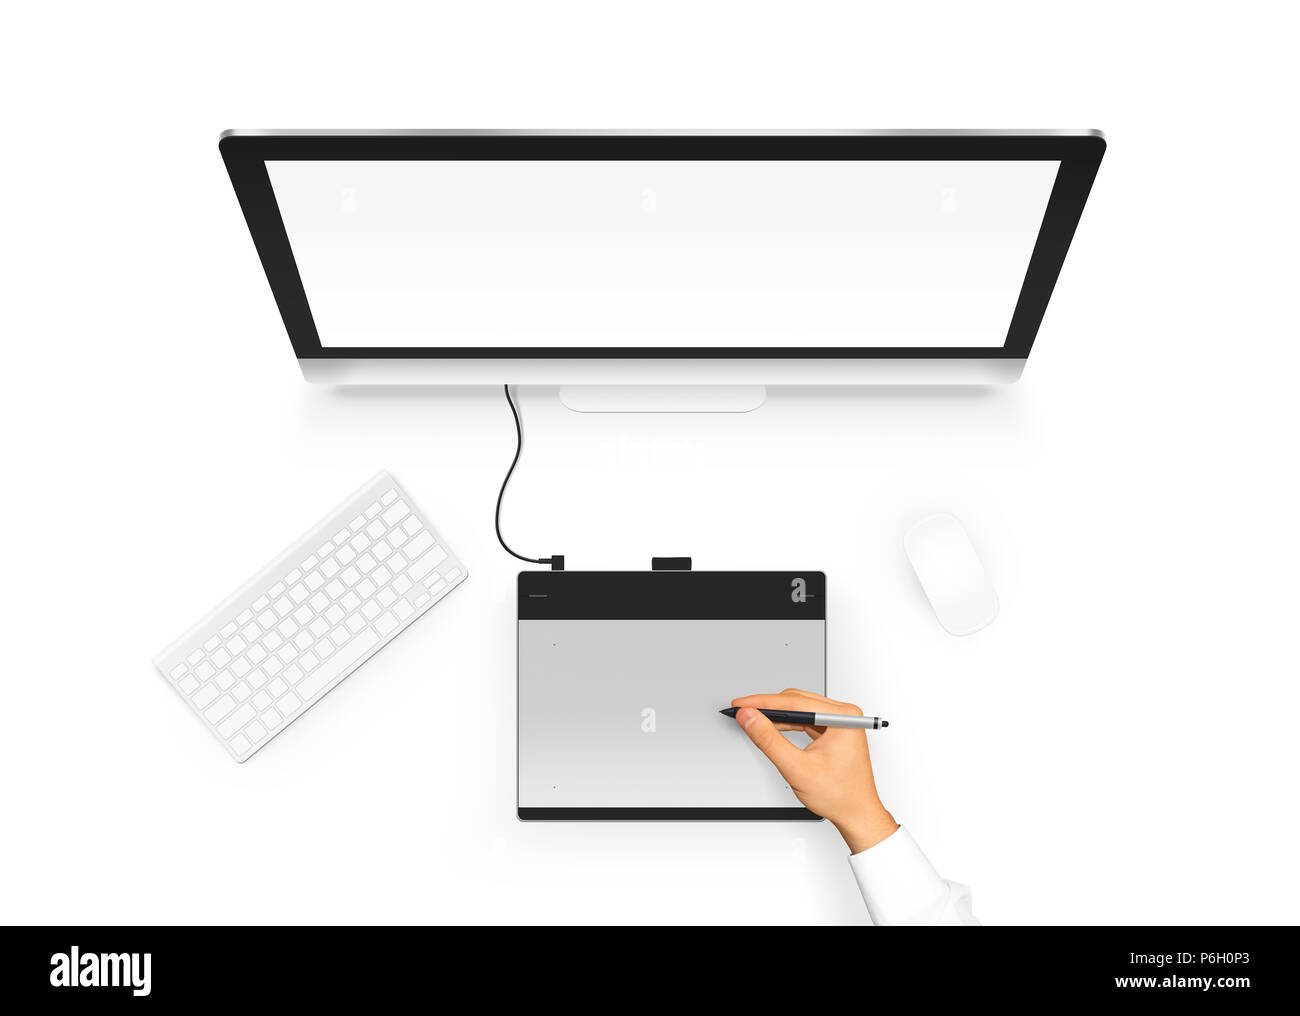 Dibujo de diseñador en la tableta gráfica, cerca del monitor del PC  pantalla en blanco. Proyecto de diseño de artista con un digitalizador,  lápiz óptico, el ordenador, el ratón y el teclado.